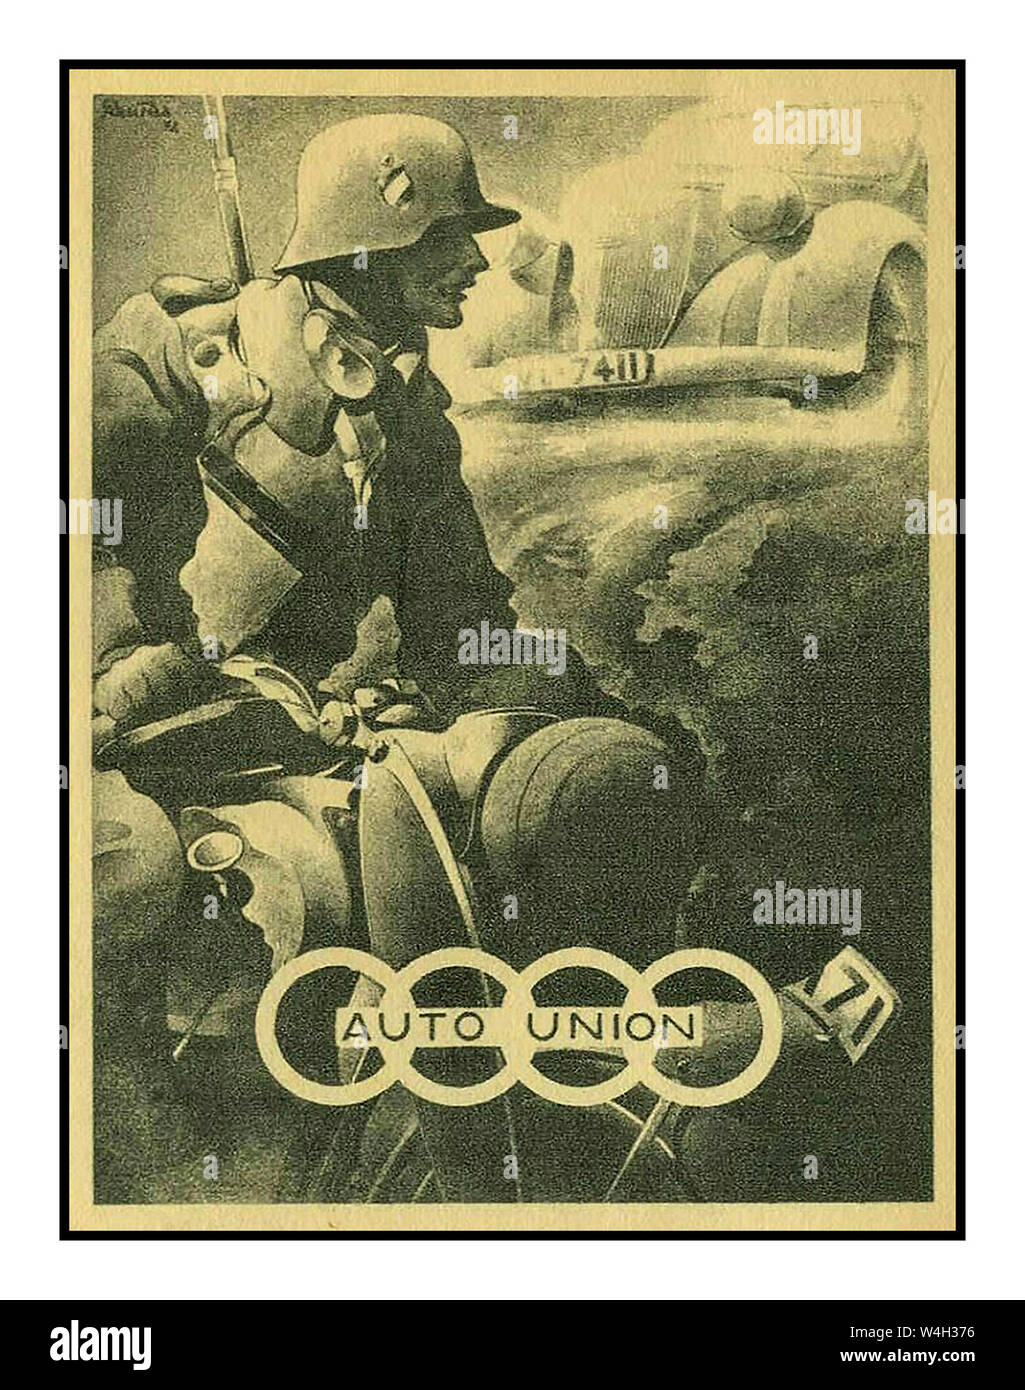 WW2 Wehrmacht esercito tedesco. Annuncio di propaganda nazista per militari di automobili e motociclette. Auto-Union (ora rinominato come Audi) Seconda Guerra Mondiale tedesco 1939 meccanizzazione della produzione industriale II Guerra Mondiale Foto Stock